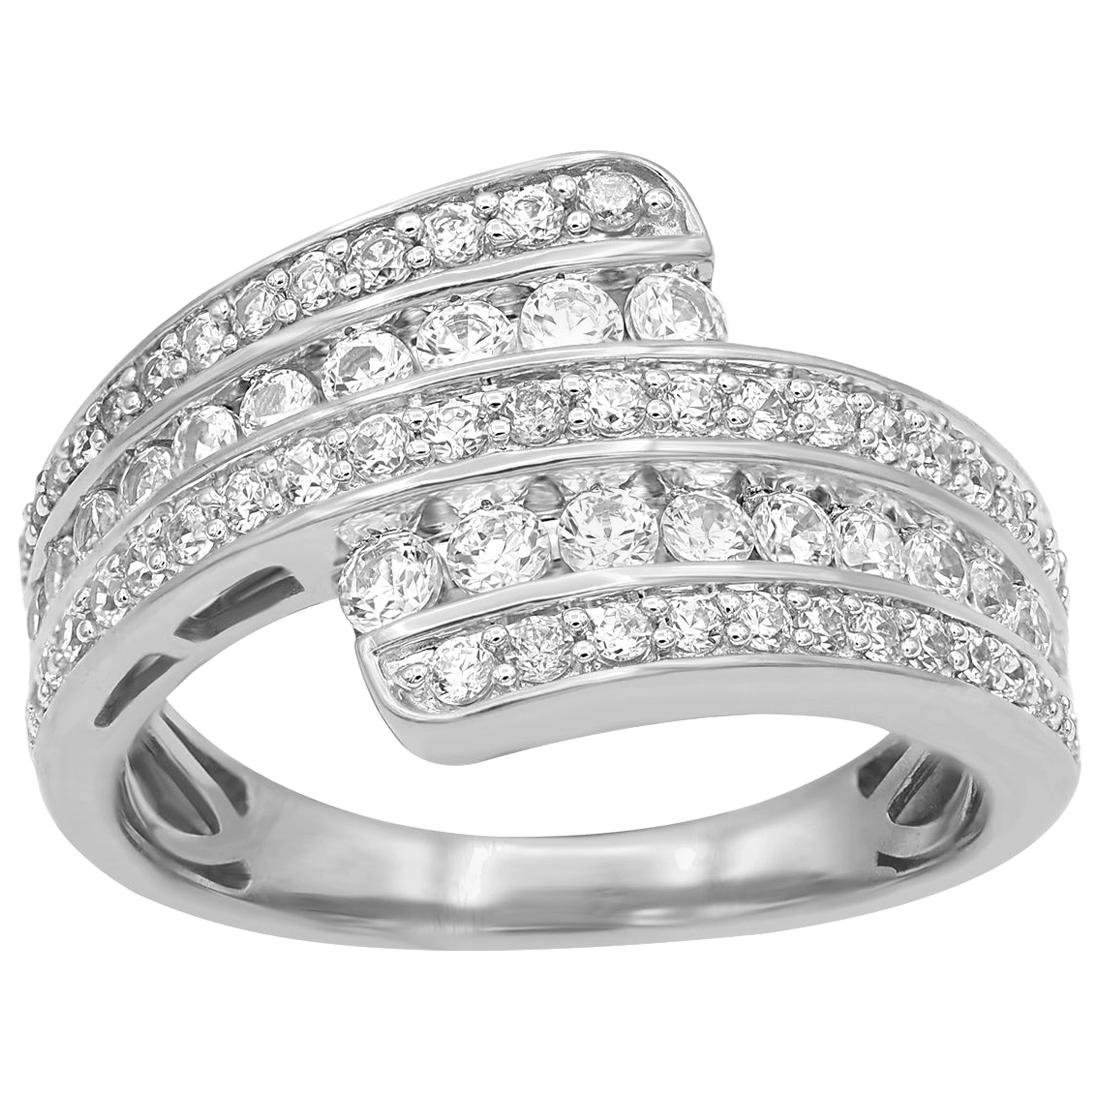 TJD 1.00 Carat Round Diamond 14 Karat White Gold Bypass Fashion Band Ring